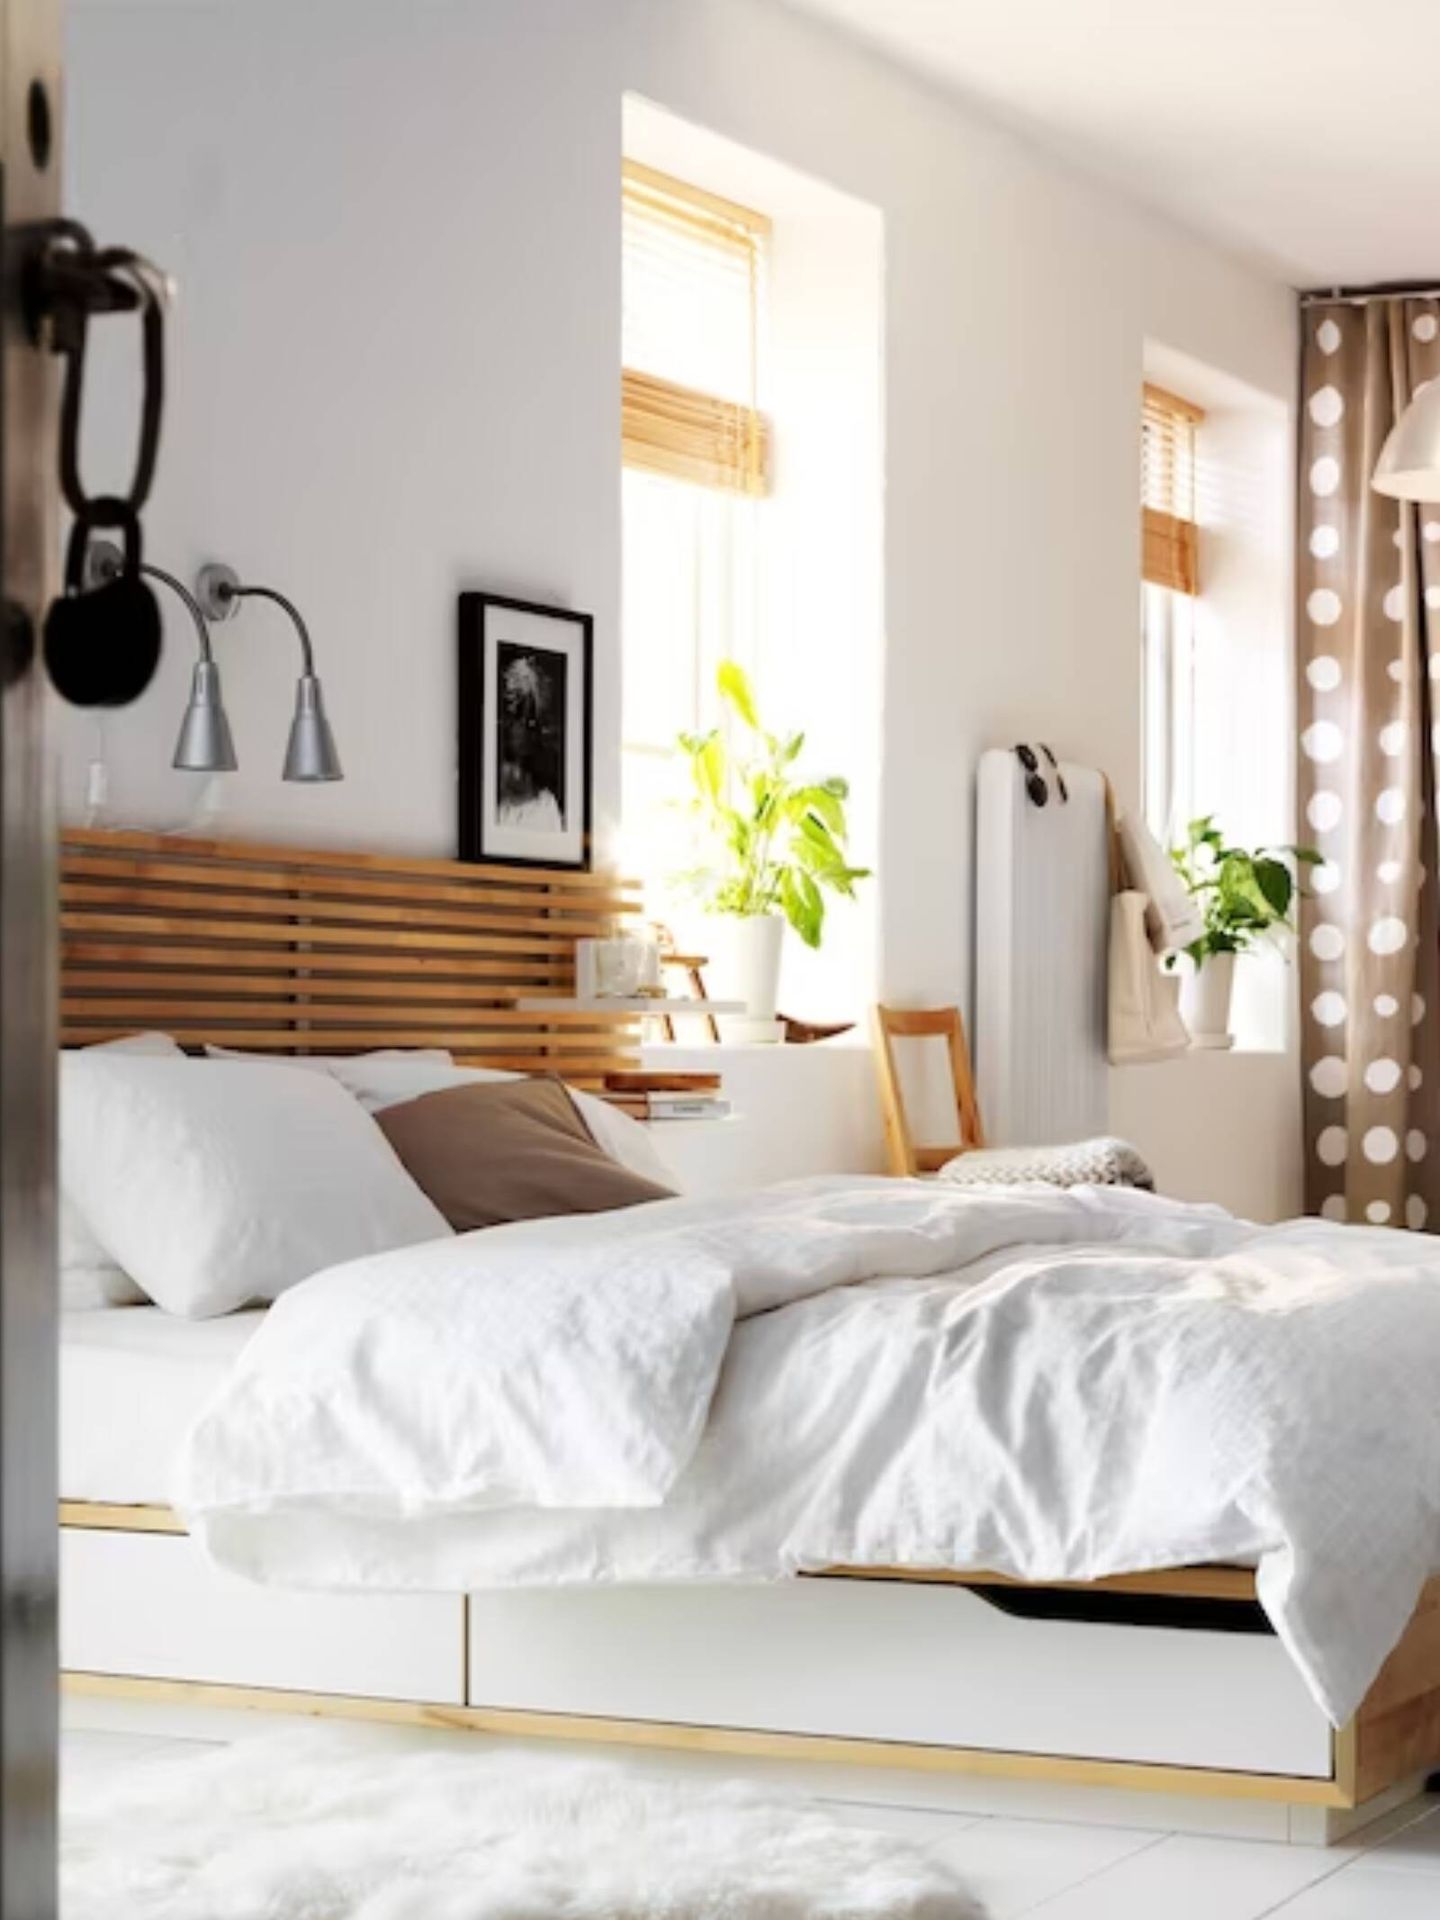 Cabeceros de cama para cambiar el aspecto de tu dormitorio. (Cortesía/Ikea)